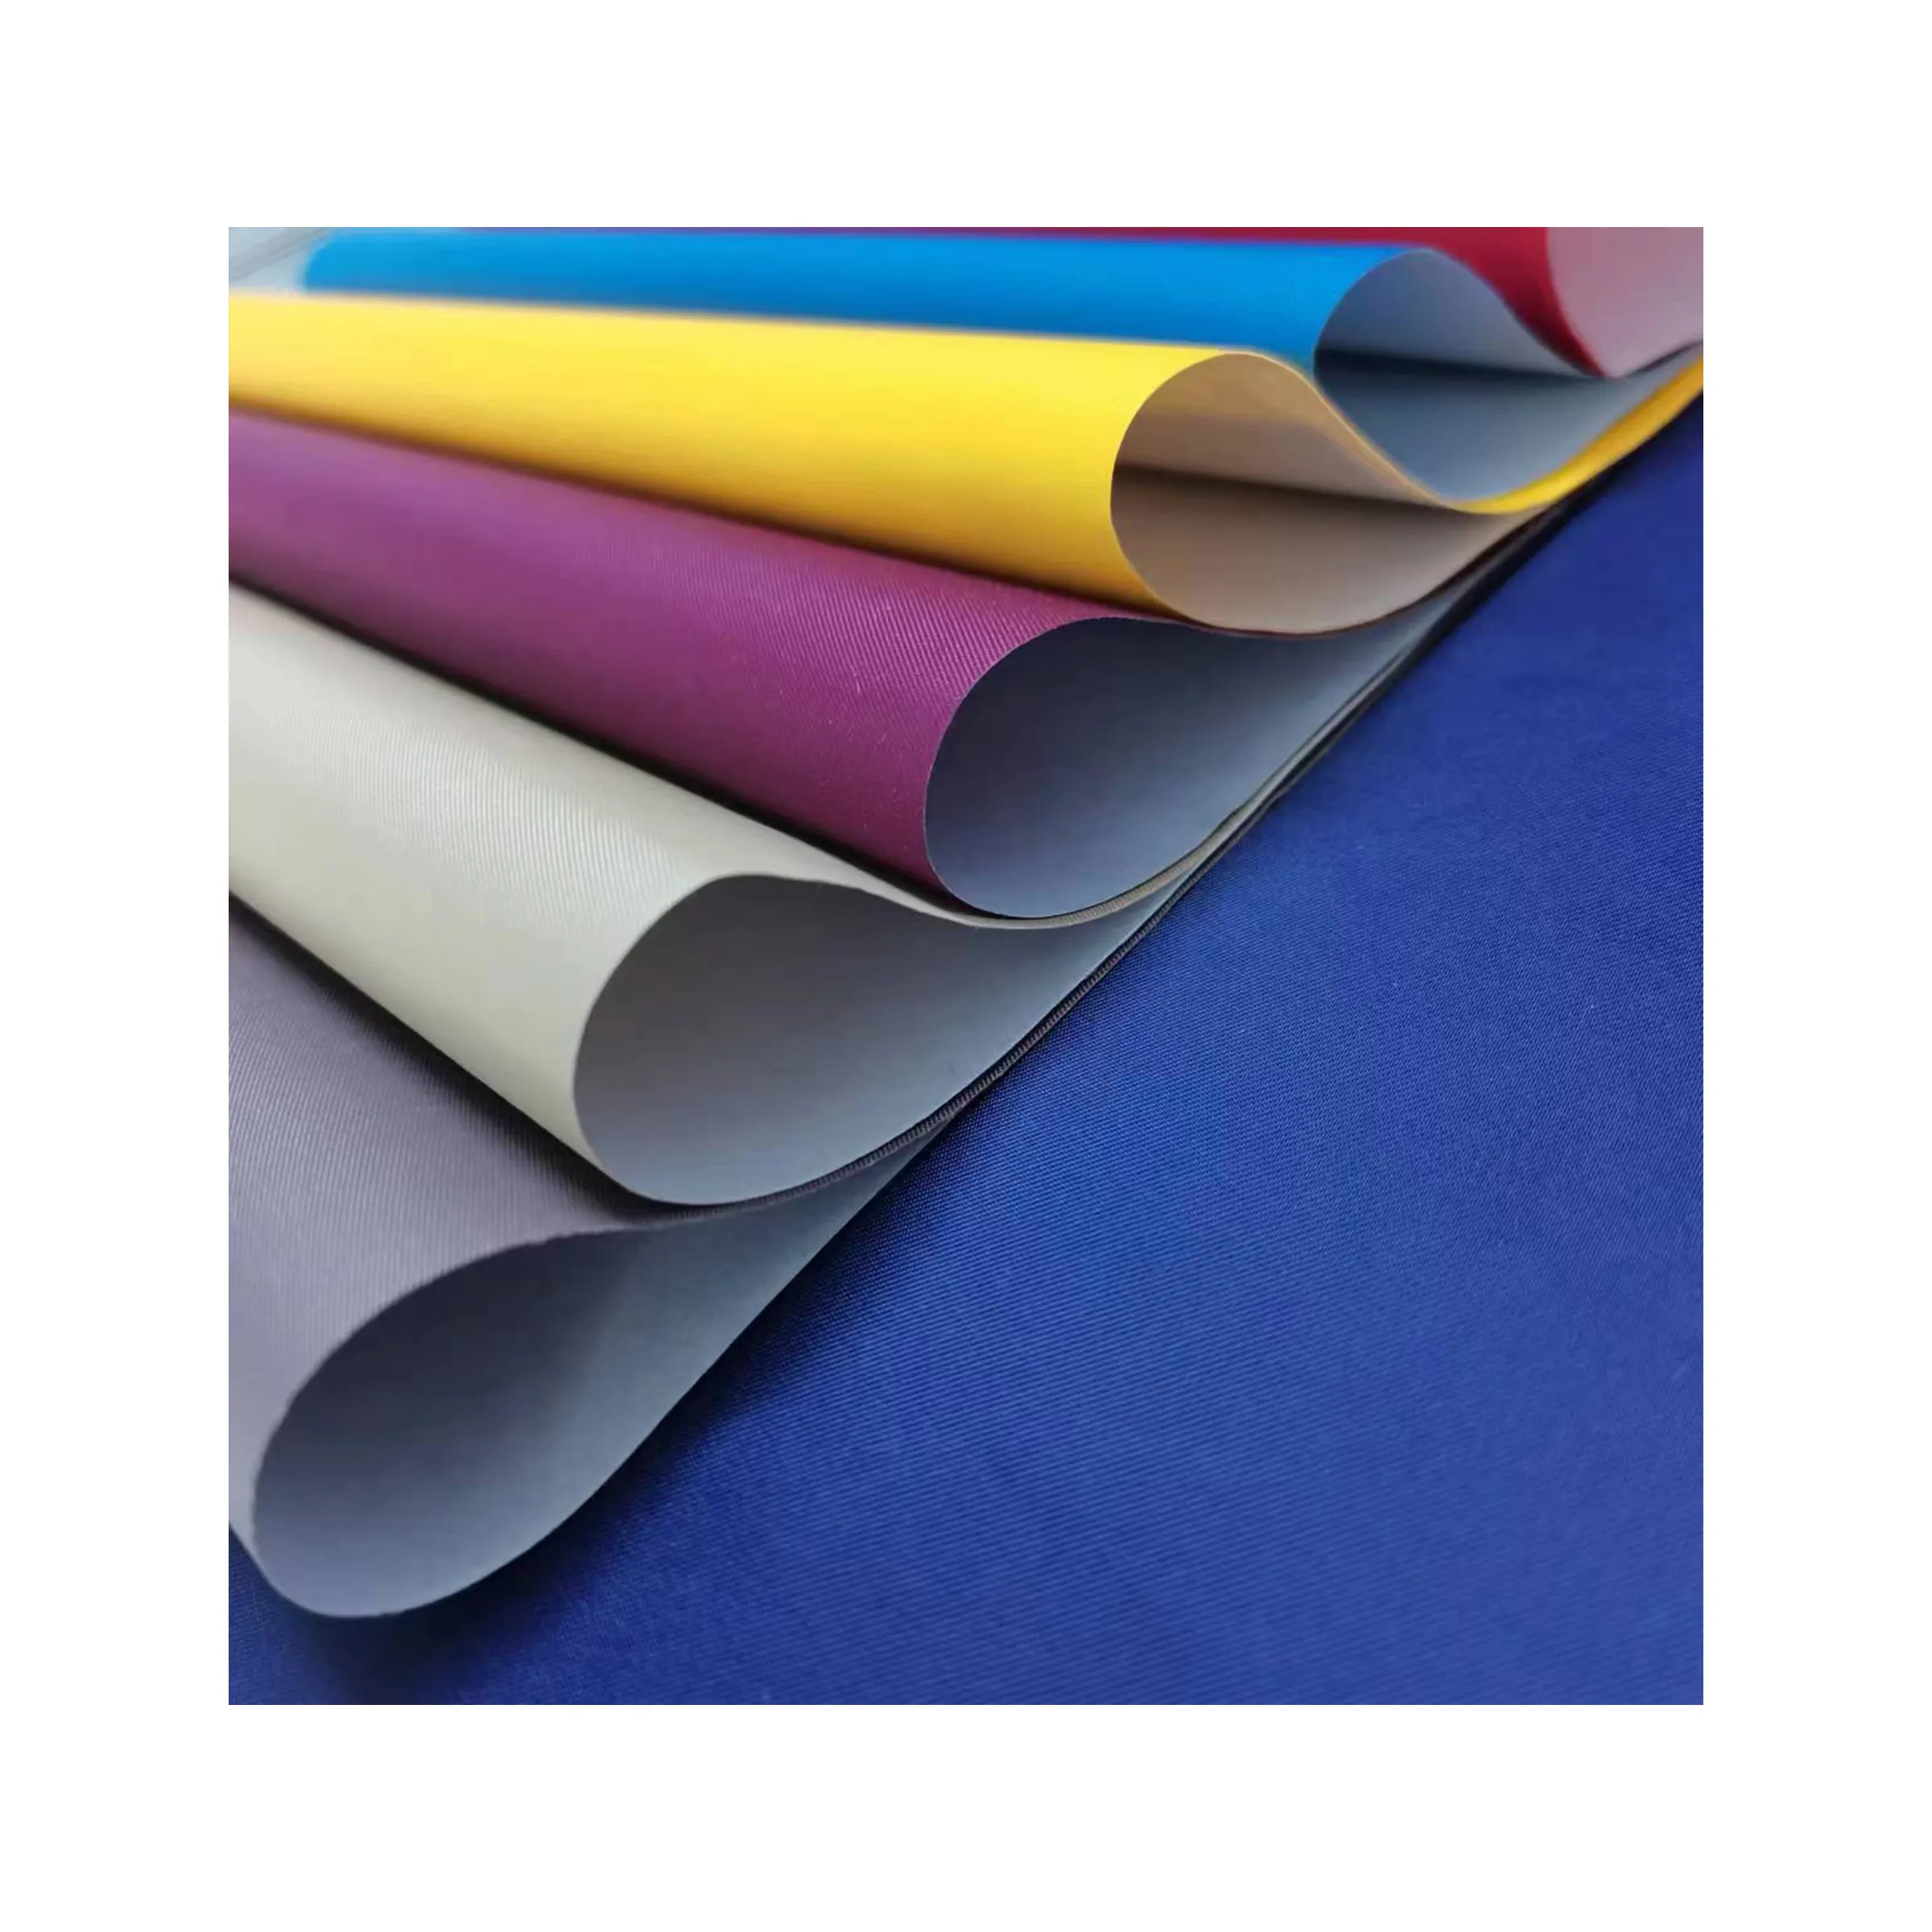 Fabrika üretimi kağıt ve özel renkli kitap ciltleme bezi omurga stokta birçok renk yaygın olarak kullanılan